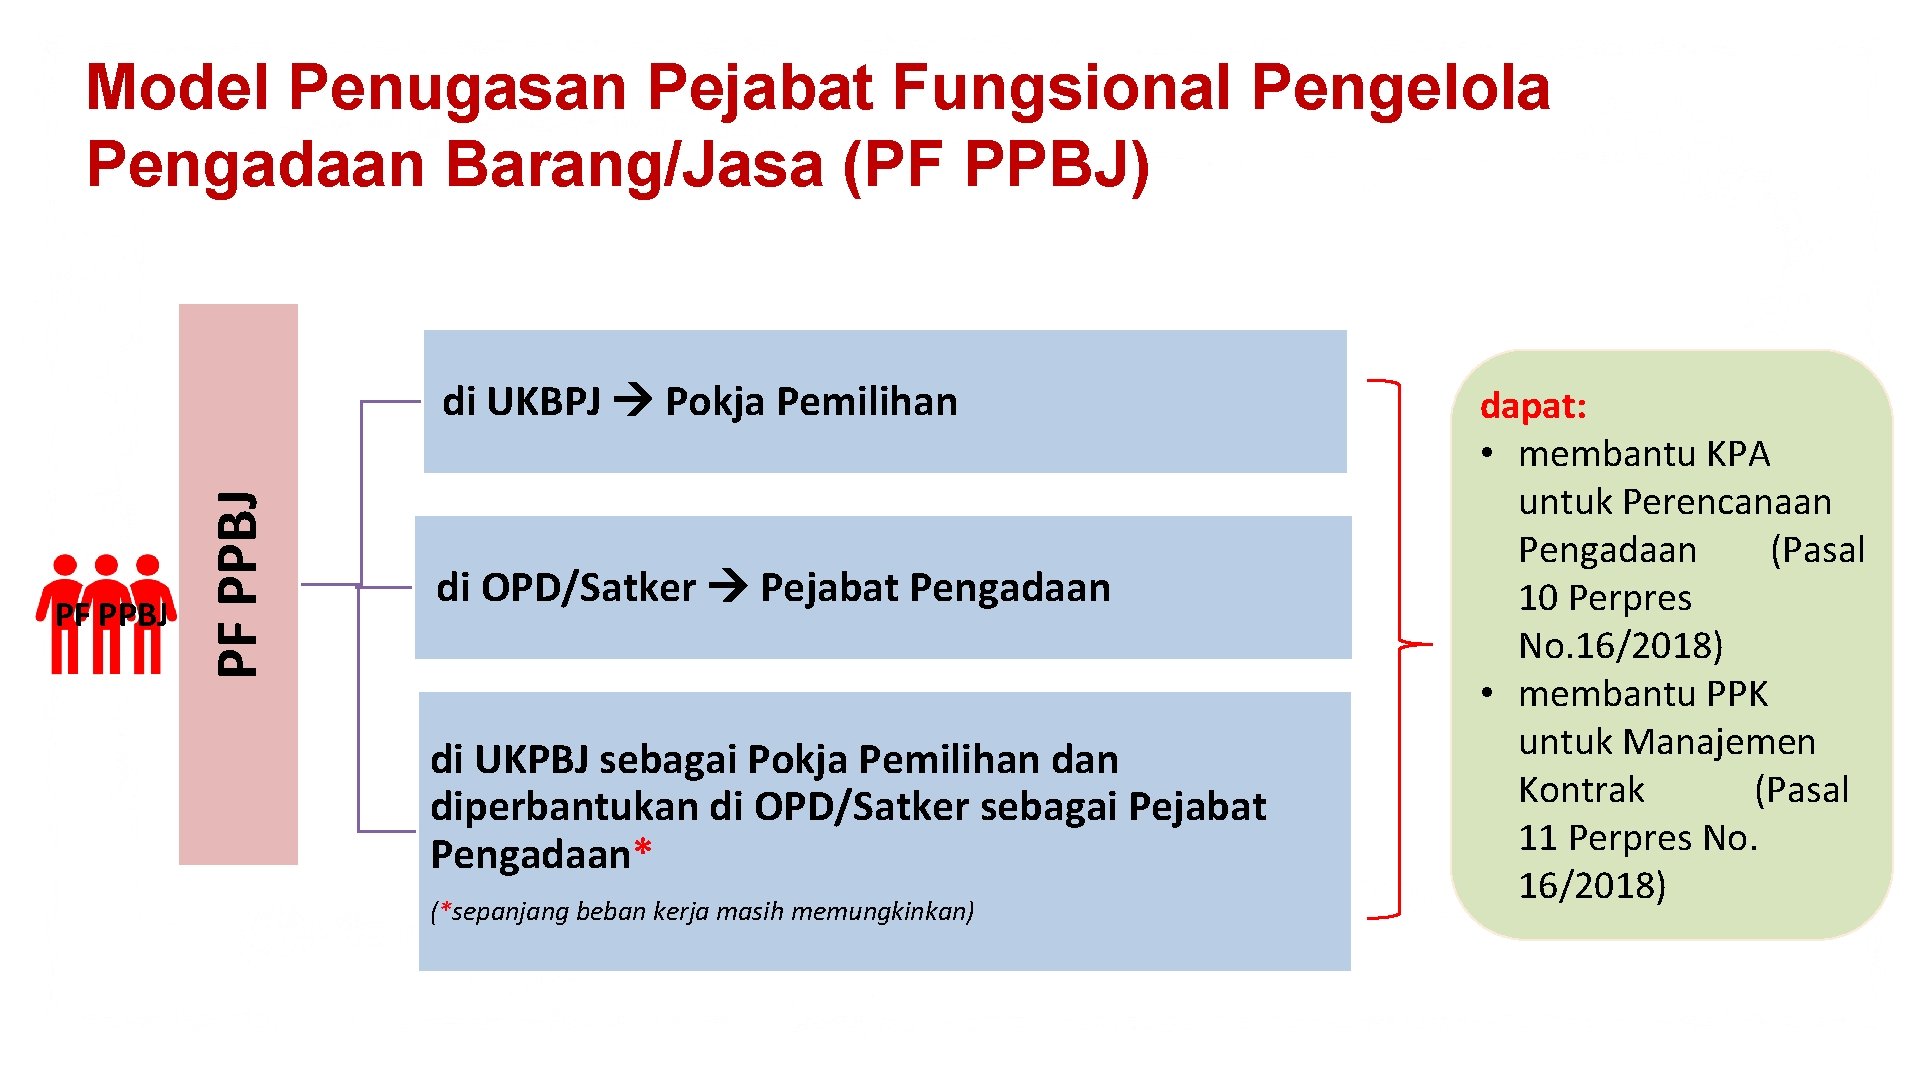 Model Penugasan Pejabat Fungsional Pengelola Pengadaan Barang/Jasa (PF PPBJ) PF PPBJ di UKBPJ Pokja